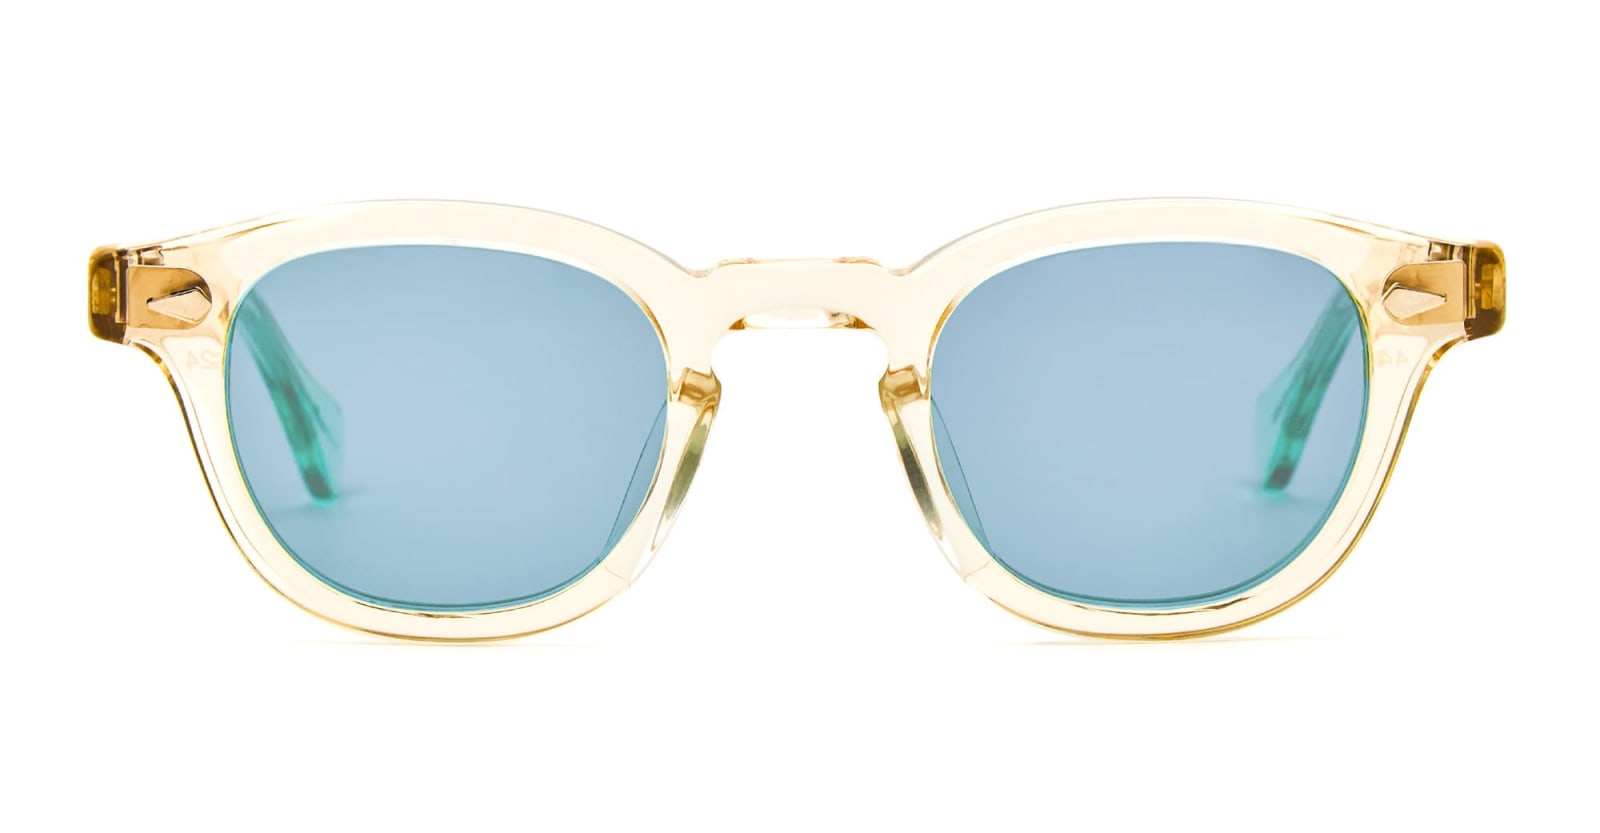 Julius Tart Optical Ar 46x24 - Champagne / Light Blue Lens Sunglasses In Gold